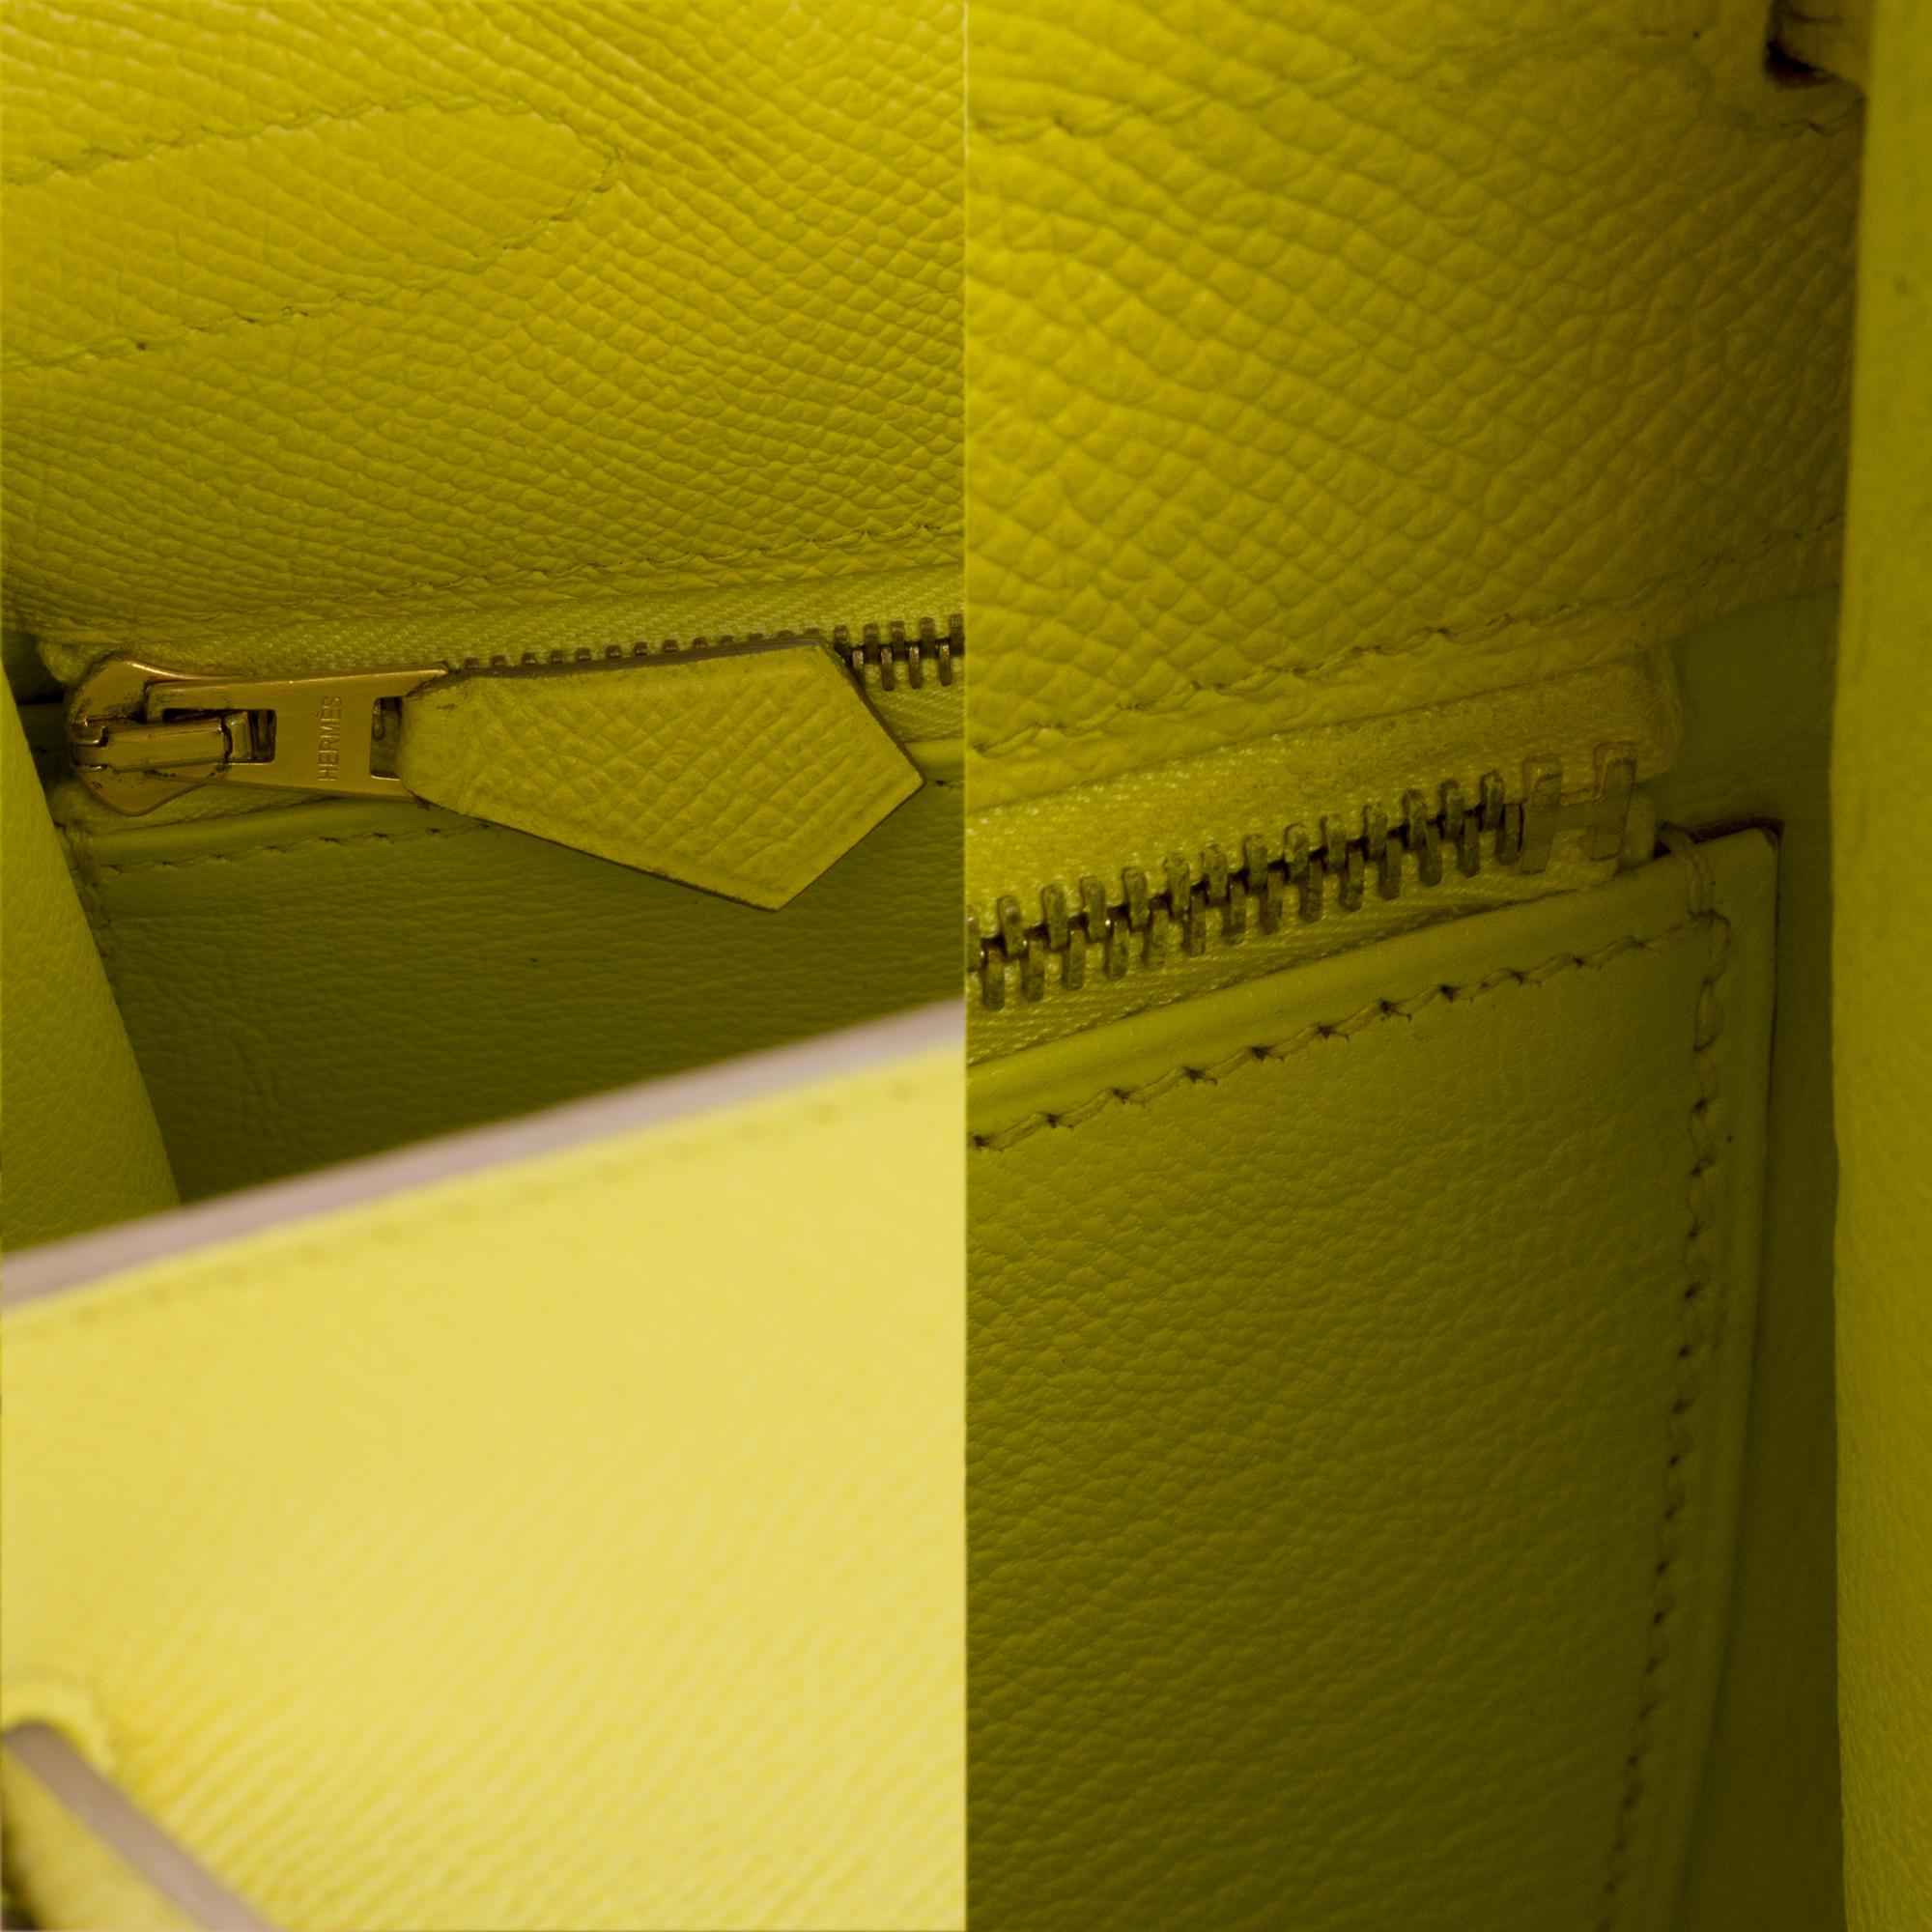 Erstaunlich Hermès Kelly 35 Handtasche mit Gurt in epsom gelb Zitrone Farbe, GHW ! 4